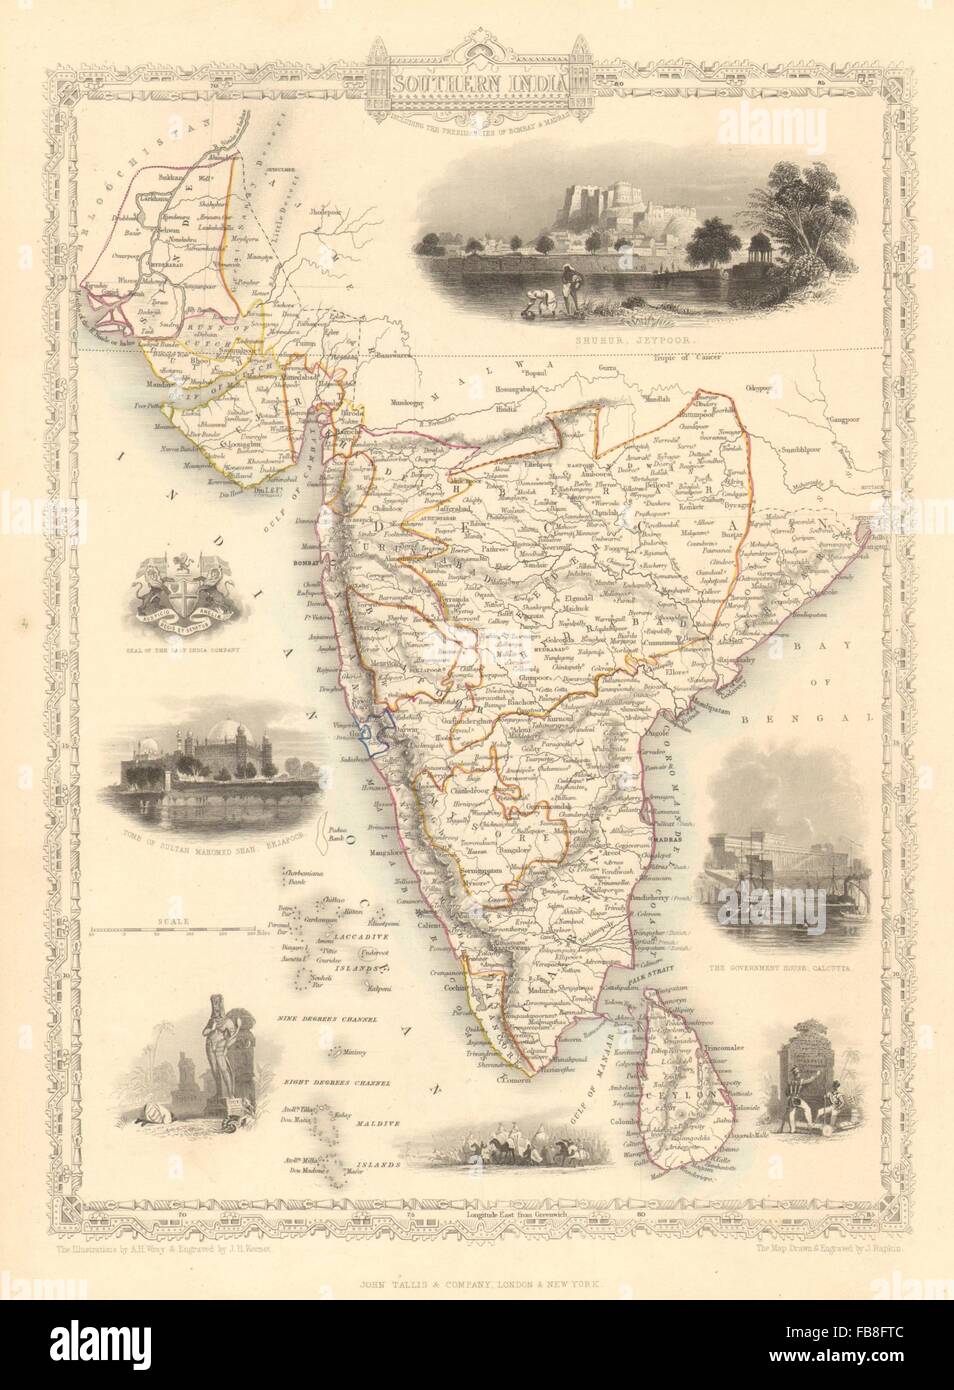 SOUTHERN INDIA: Amber Fort, Jaipur & Gol Gumbaz, Bijapur.TALLIS/RAPKIN, 1851 map Stock Photo